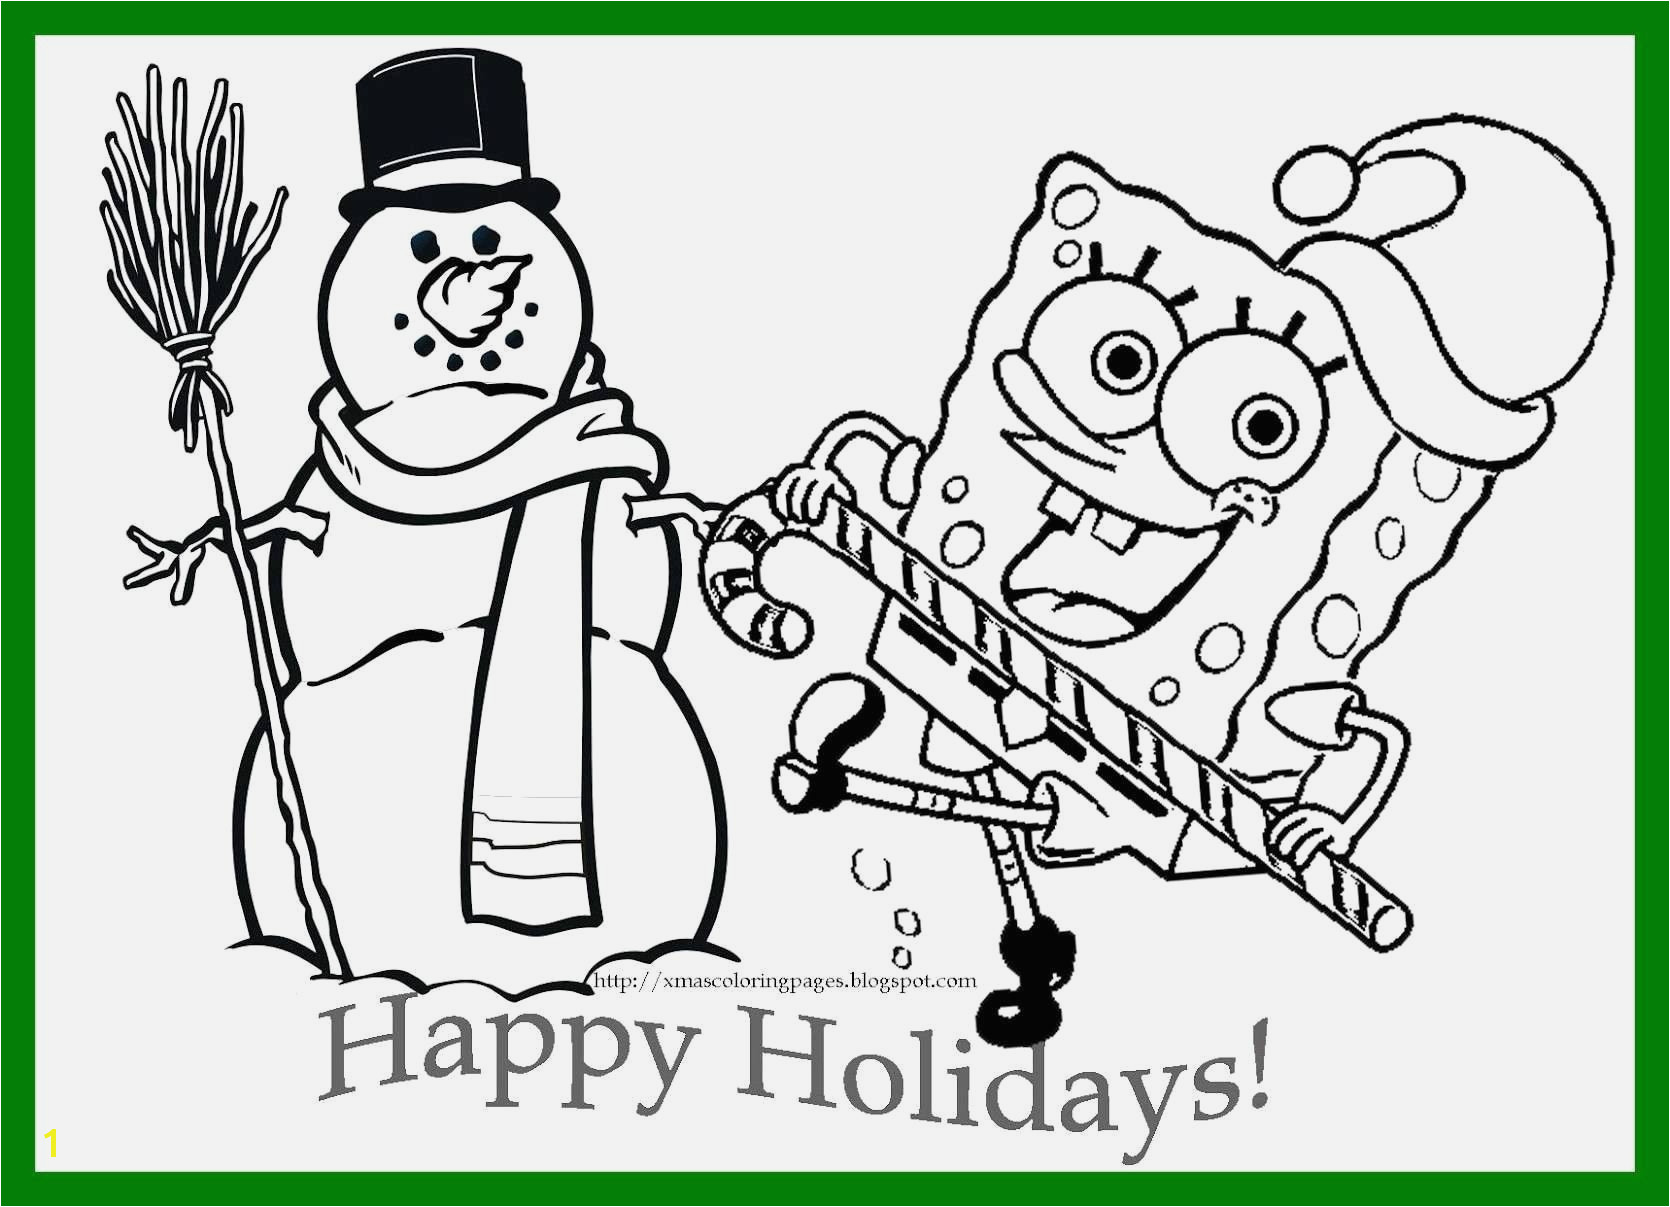 Free Printable Disney Frozen Christmas Coloring Pages Spongebob Coloring Pages Printable 50 Luxury Frozen Christmas